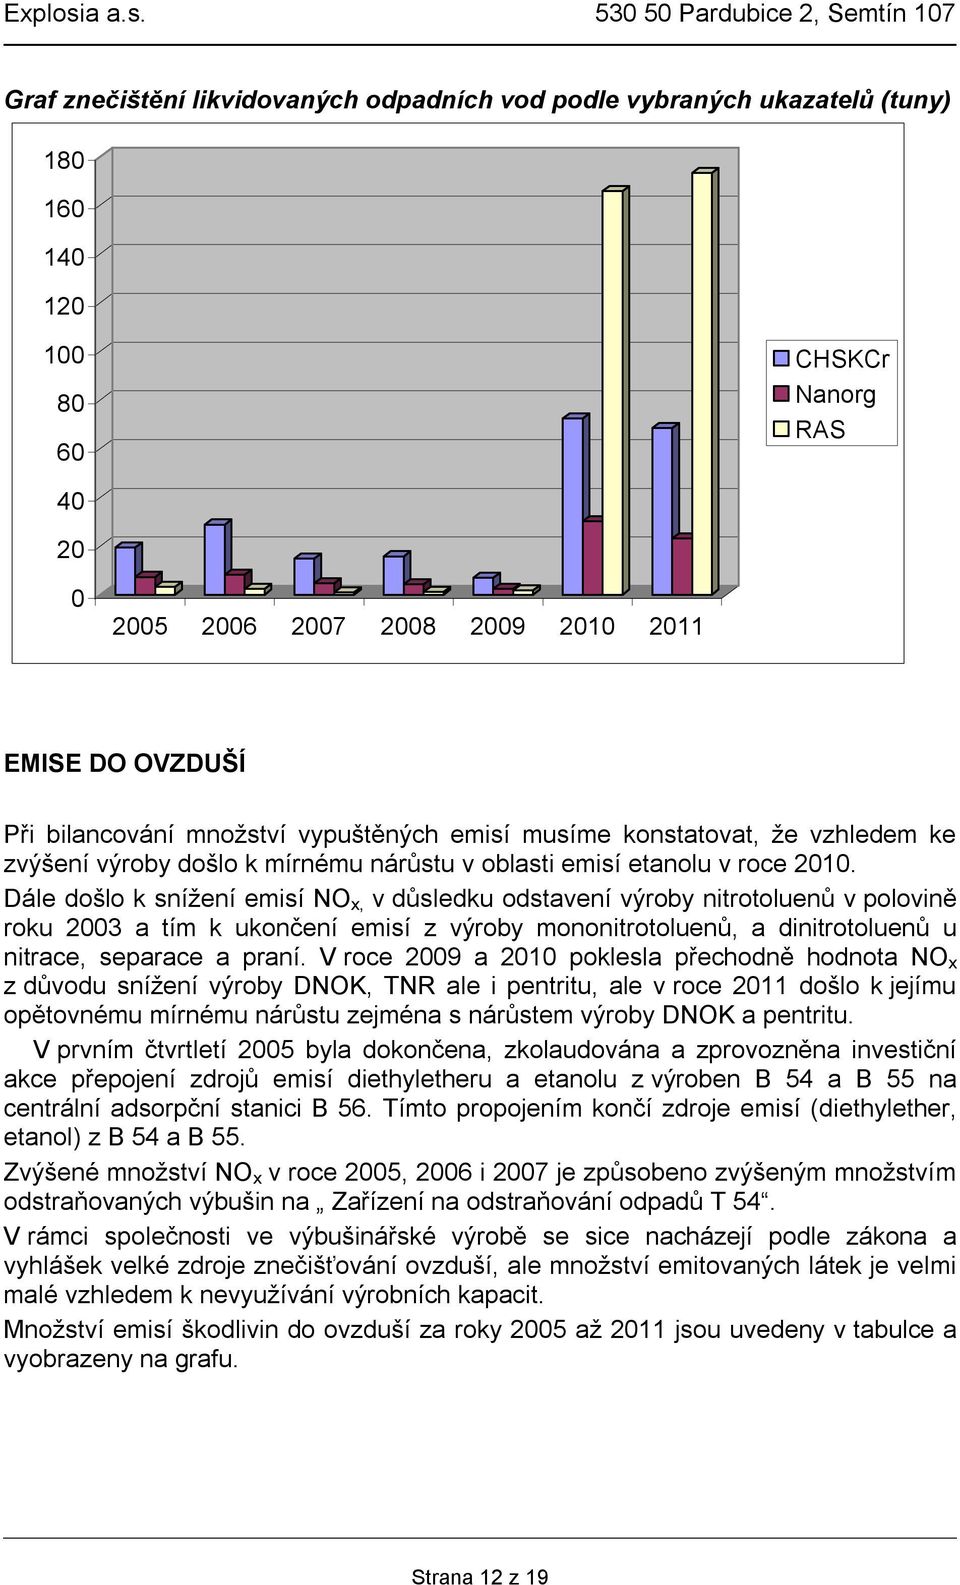 Dále došlo k snížení emisí NO x, v důsledku odstavení výroby nitrotoluenů v polovině roku 2003 a tím k ukončení emisí z výroby mononitrotoluenů, a dinitrotoluenů u nitrace, separace a praní.